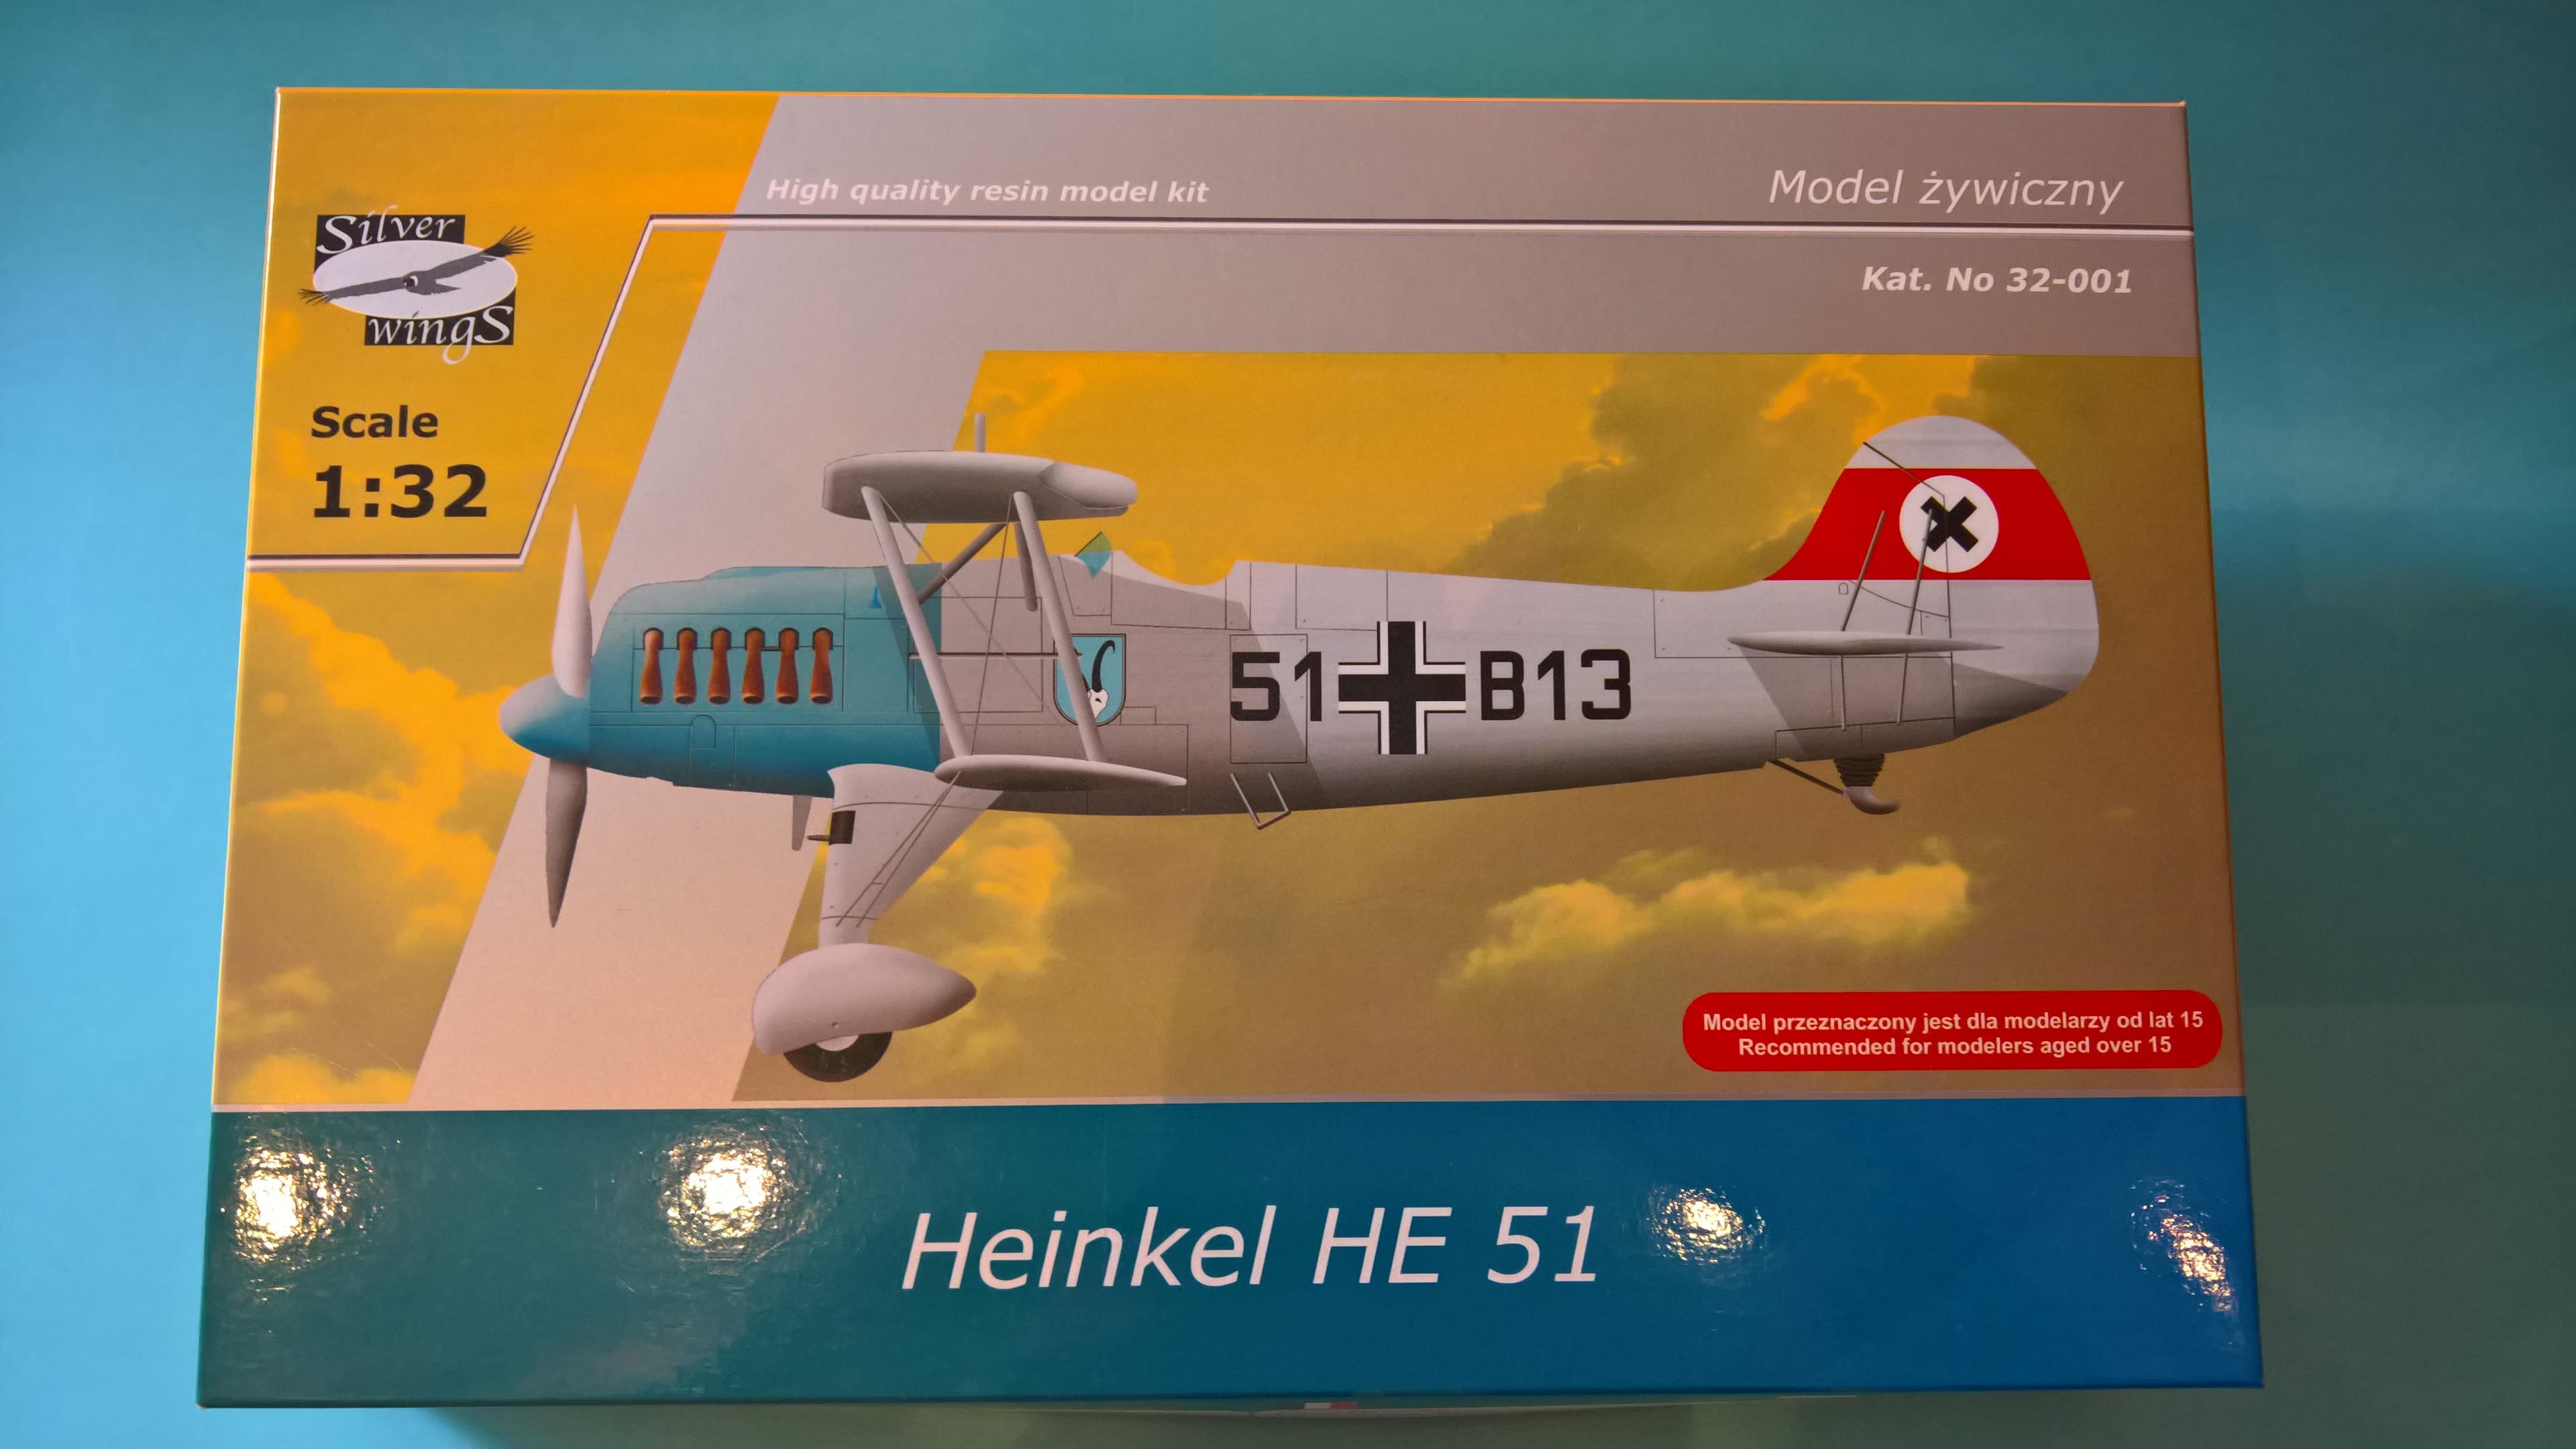 He-51

He_51